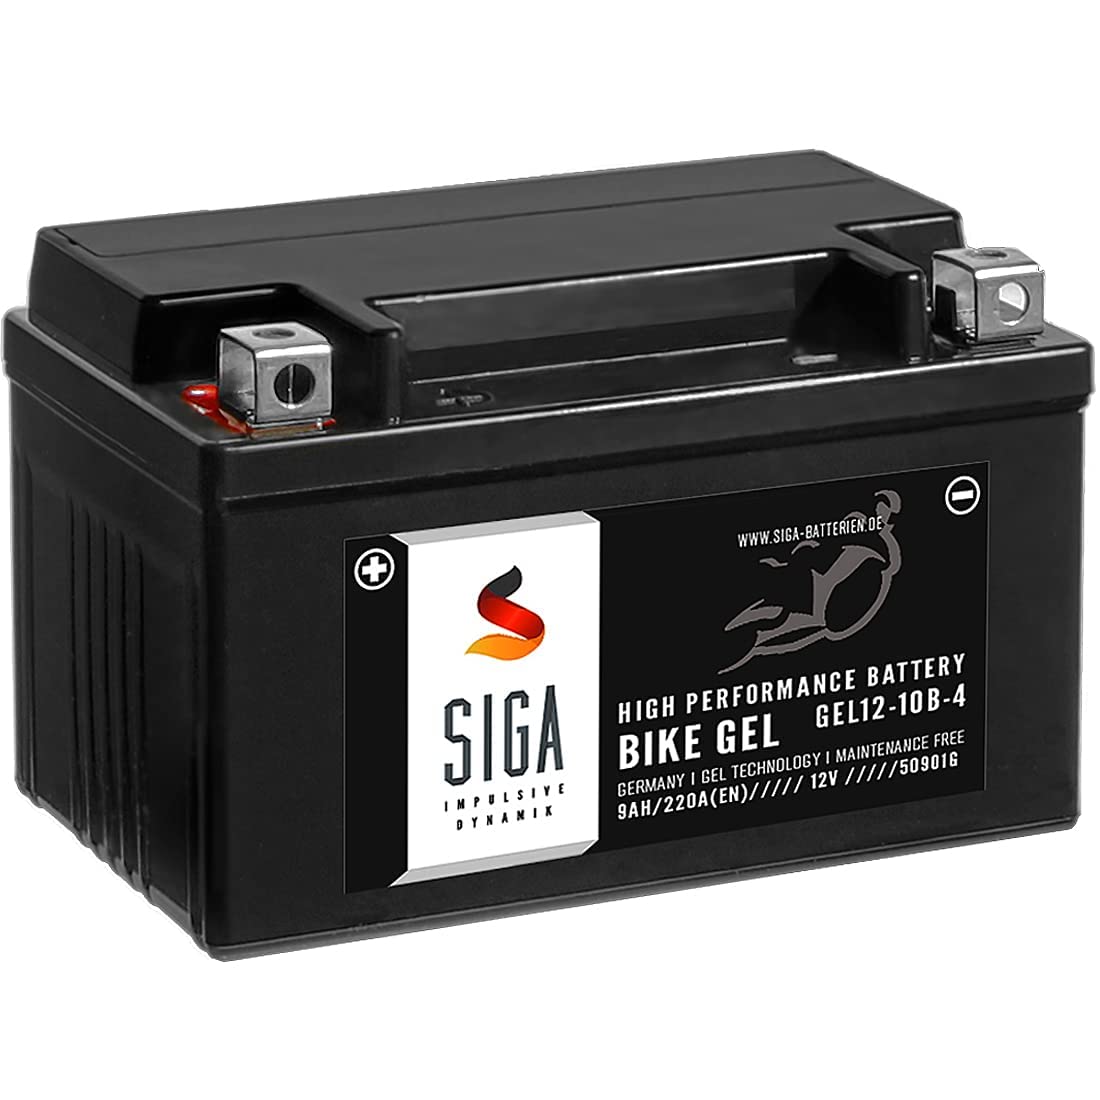 SIGA GEL Motorradbatterie 12V 9Ah 220A/EN Gel Batterie YTZ10-S GEL12-10B-4 YT10B-4 GTZ10-4 GT10B-4 TTZ10S-4 von SIGA IMPULSIVE DYNAMIK